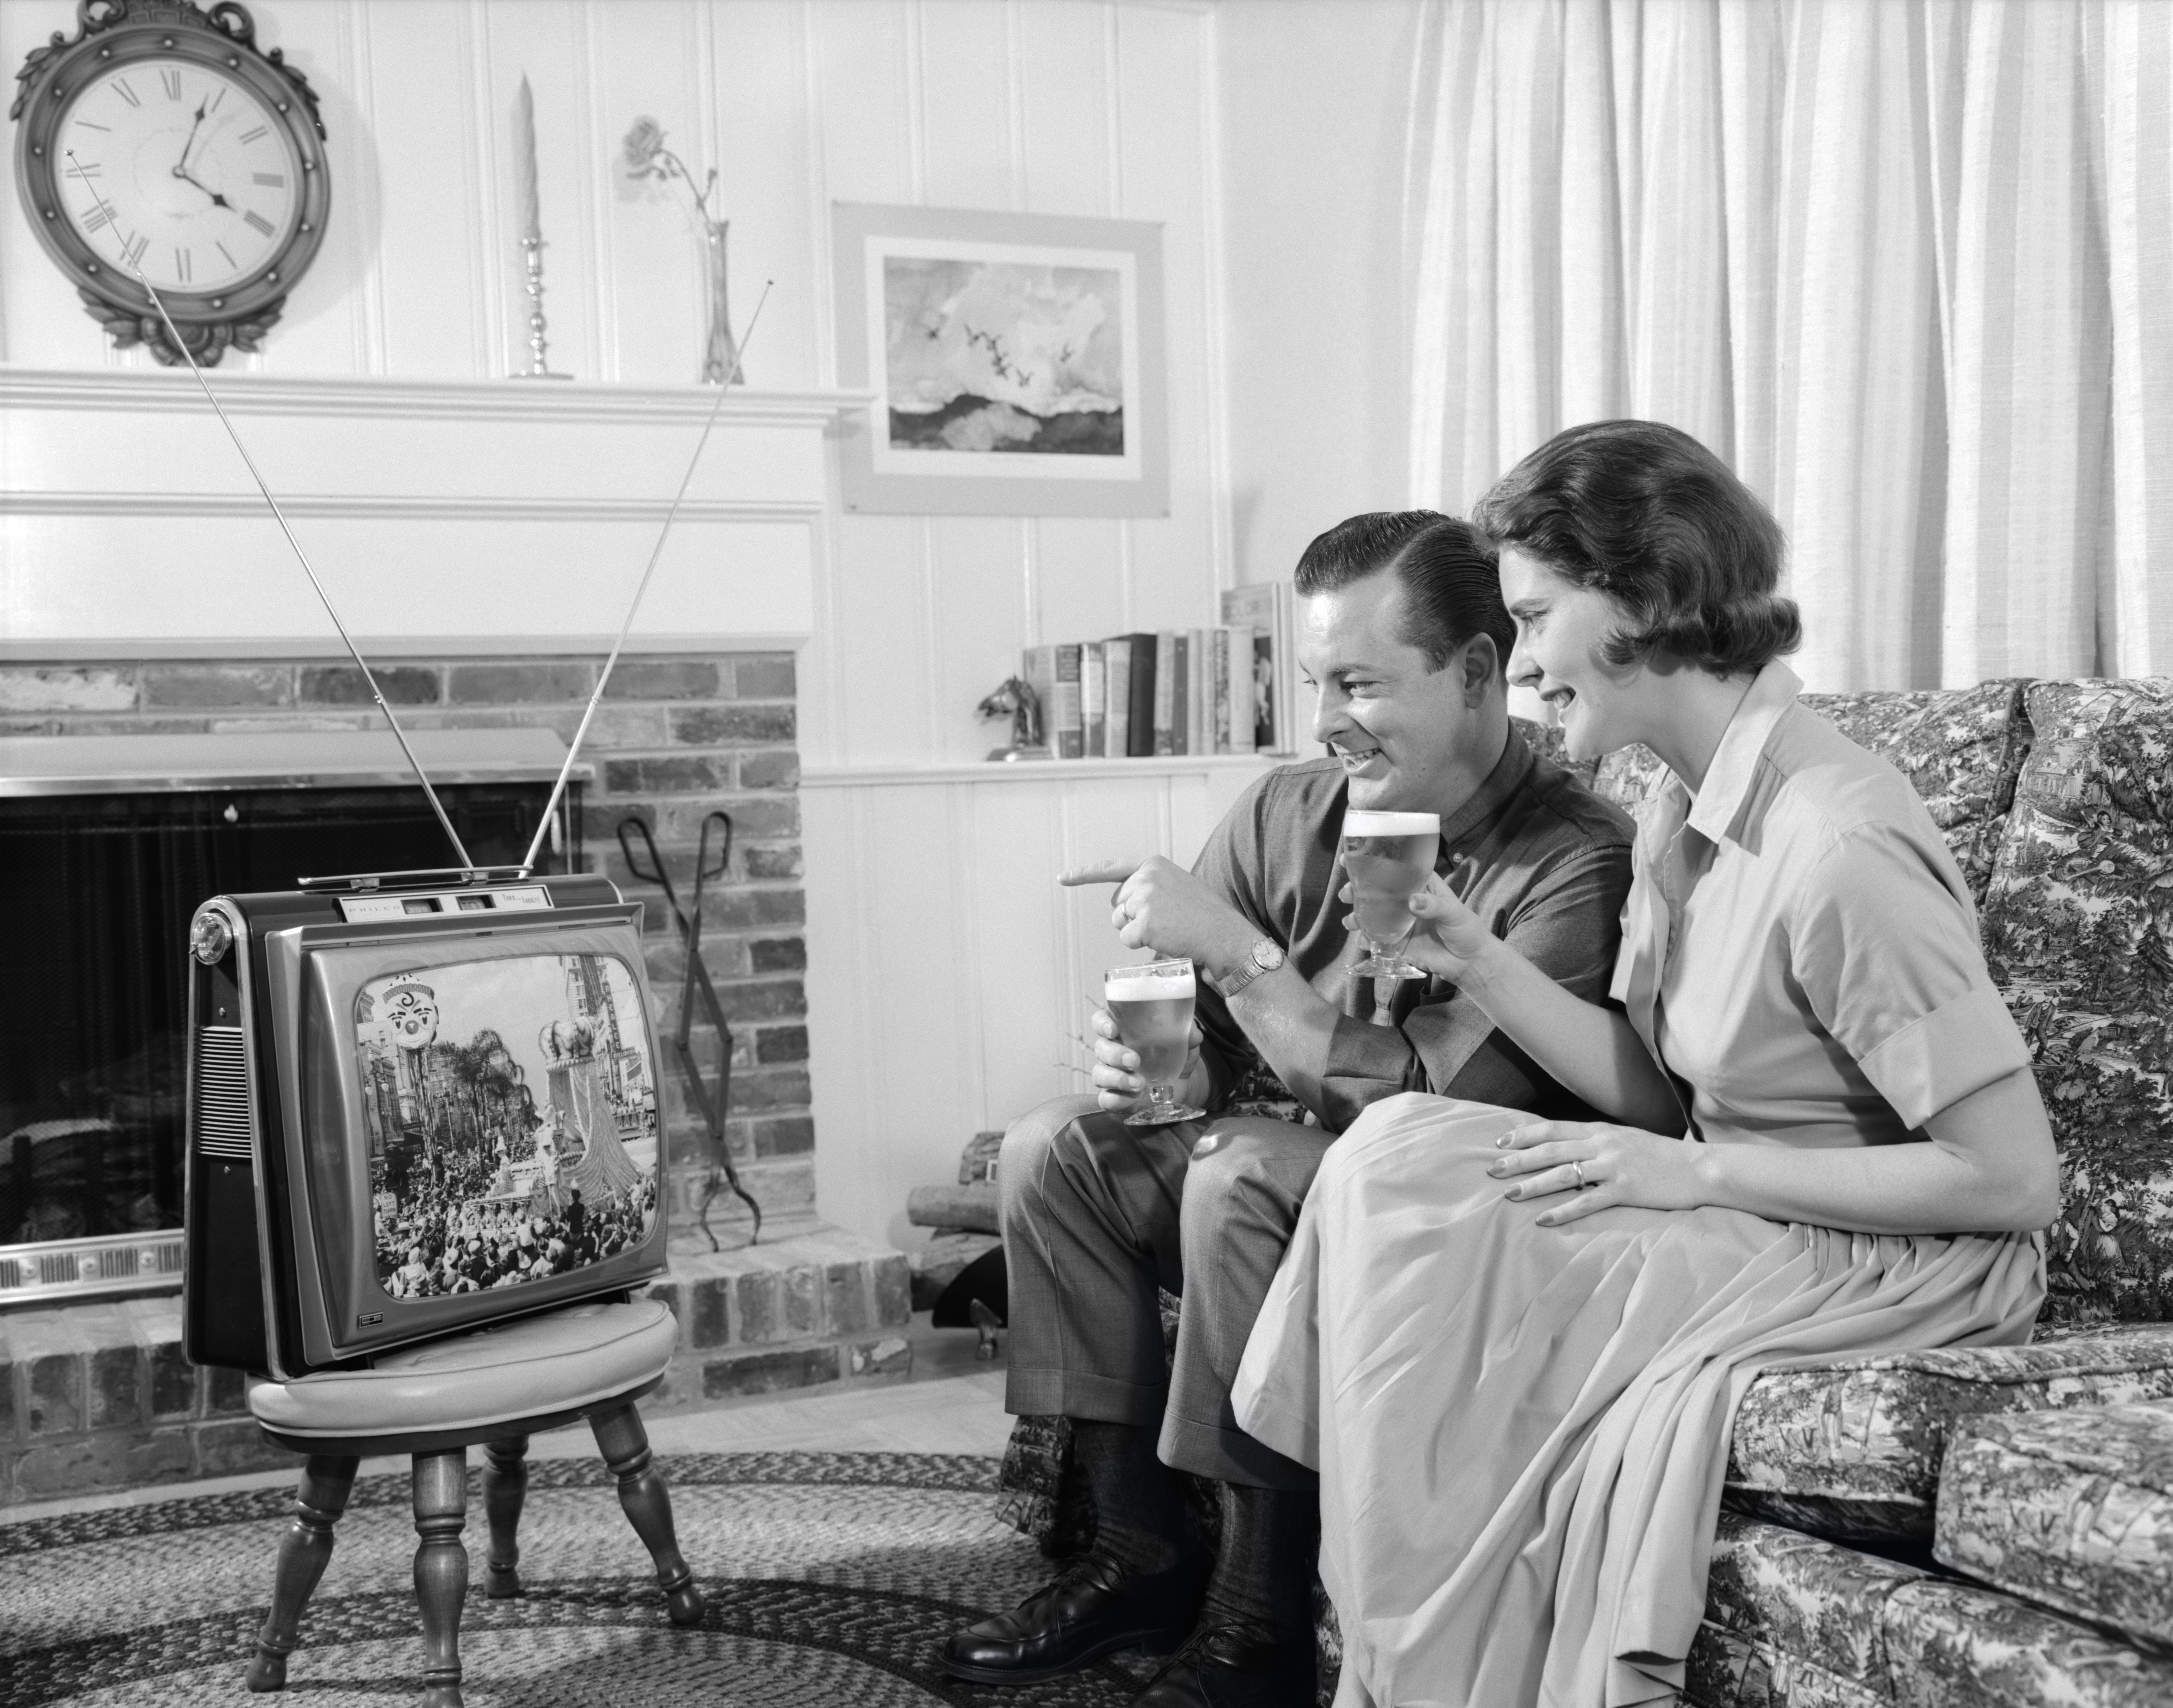 Просмотр передачи телевизора. Ретро телевизор. Телевизор 1950-х годов. Старинный телевизор. Телевизор 1960.